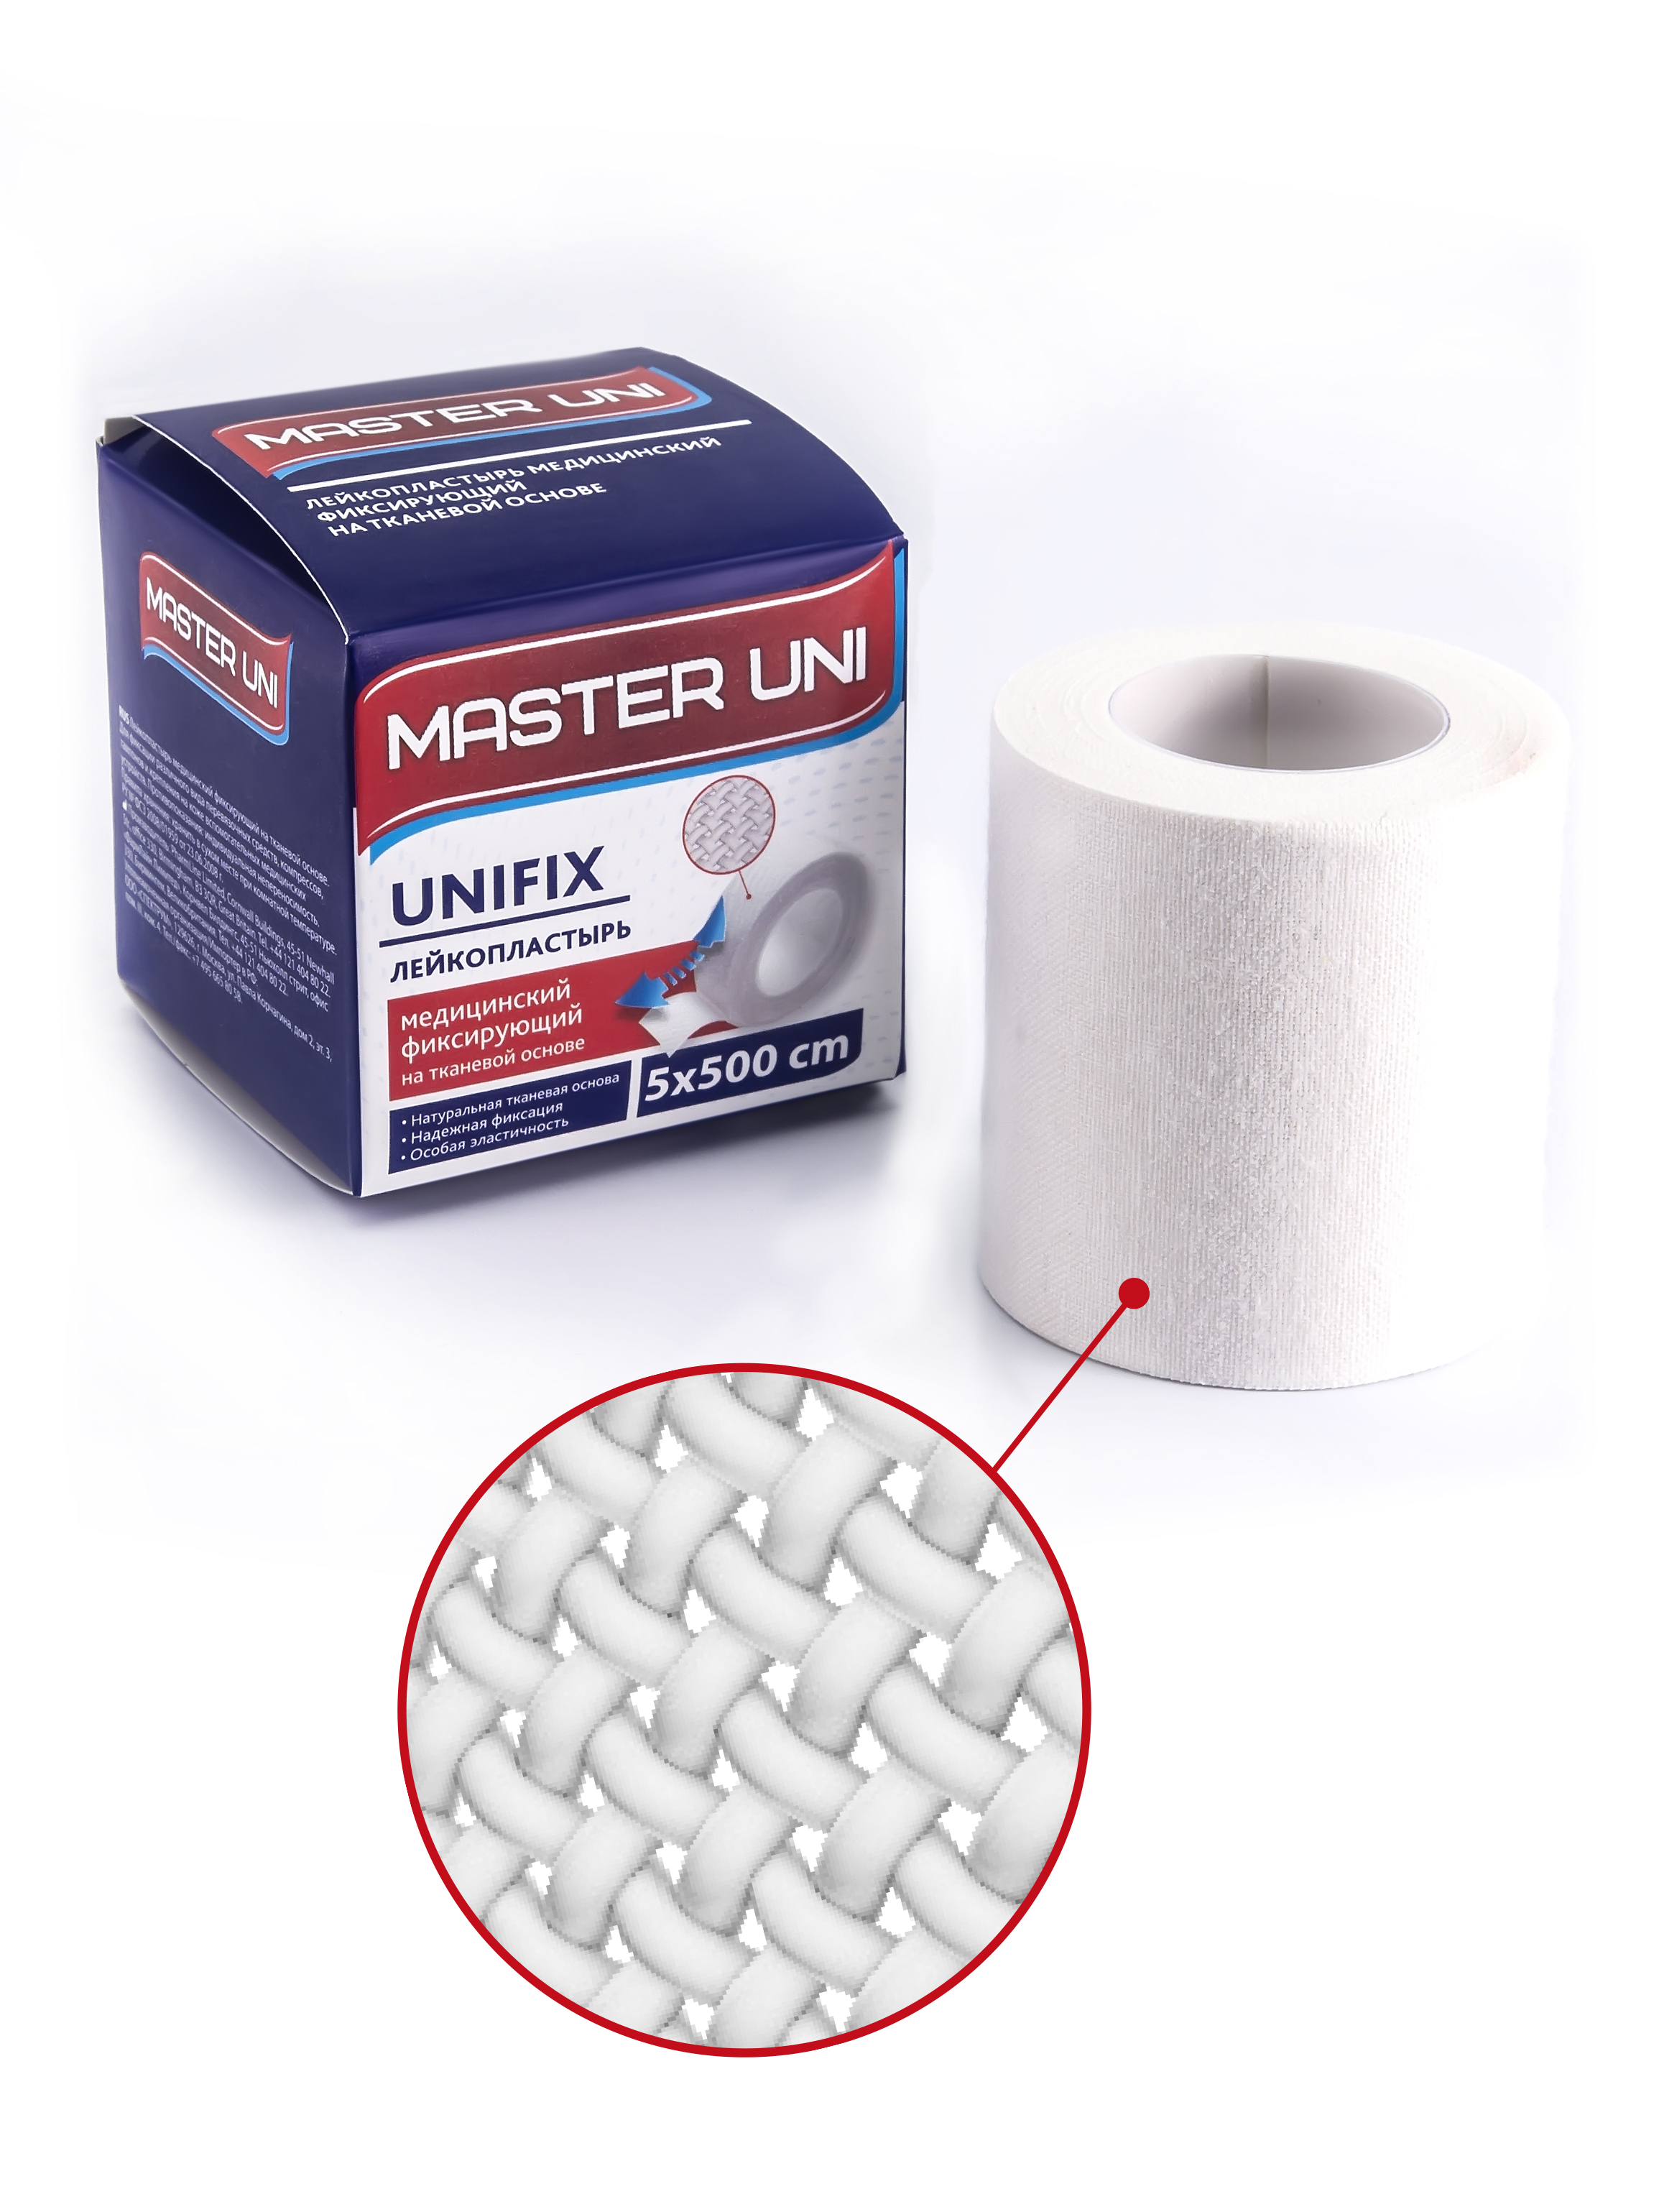 Купить UNIFIX Лейкопластырь 5 х 500 см на тканевой основе, Пластырь Master Uni Unifix фиксирующий на тканевой основе 5 х 500 см